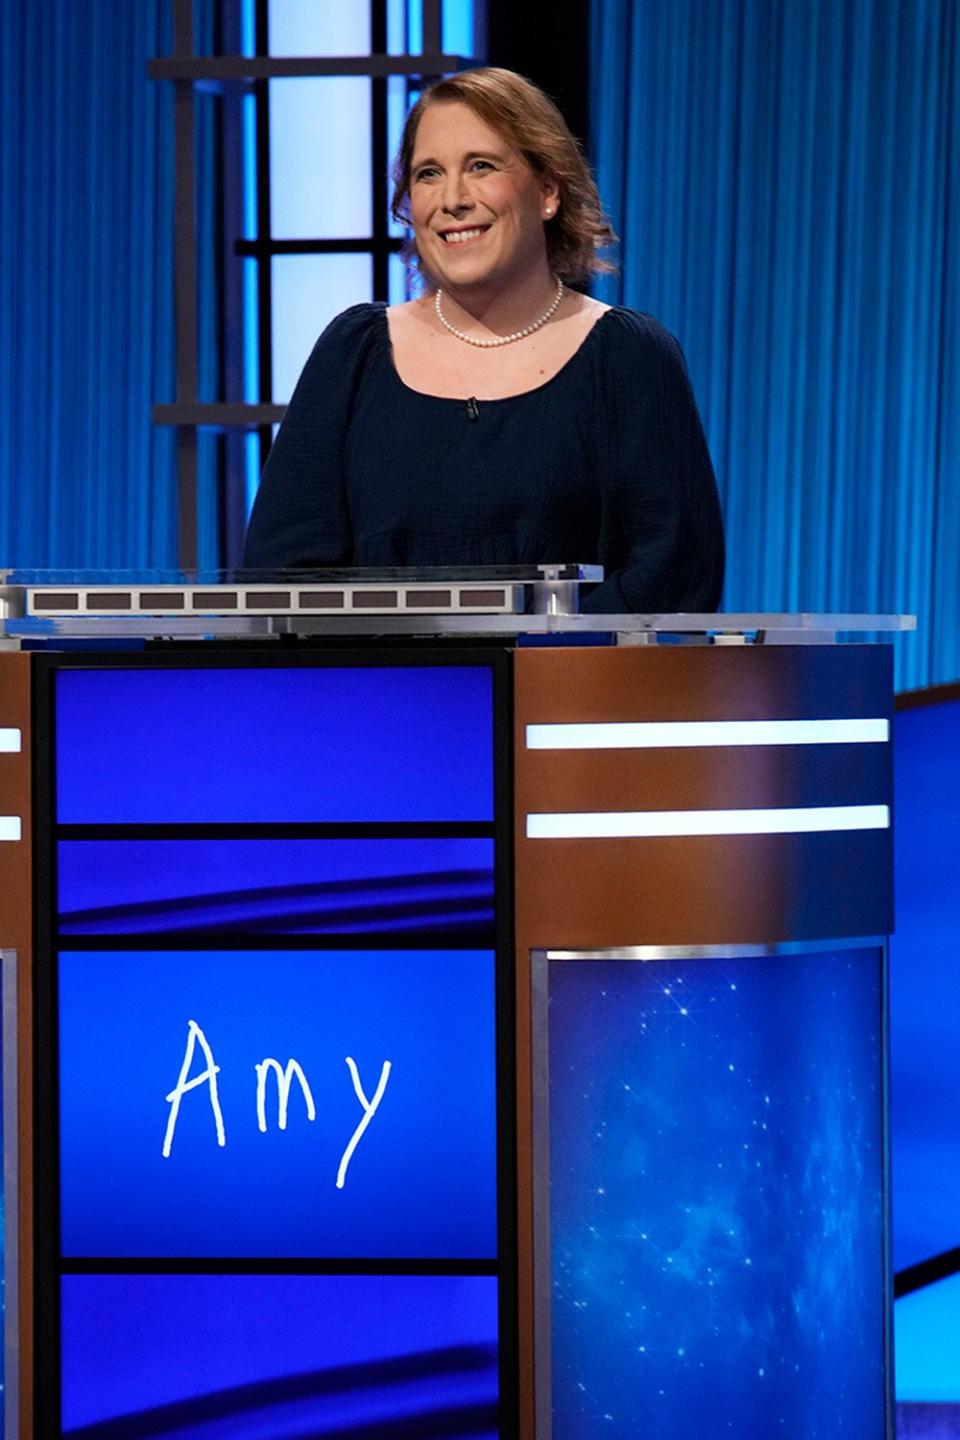 Amy Schneider